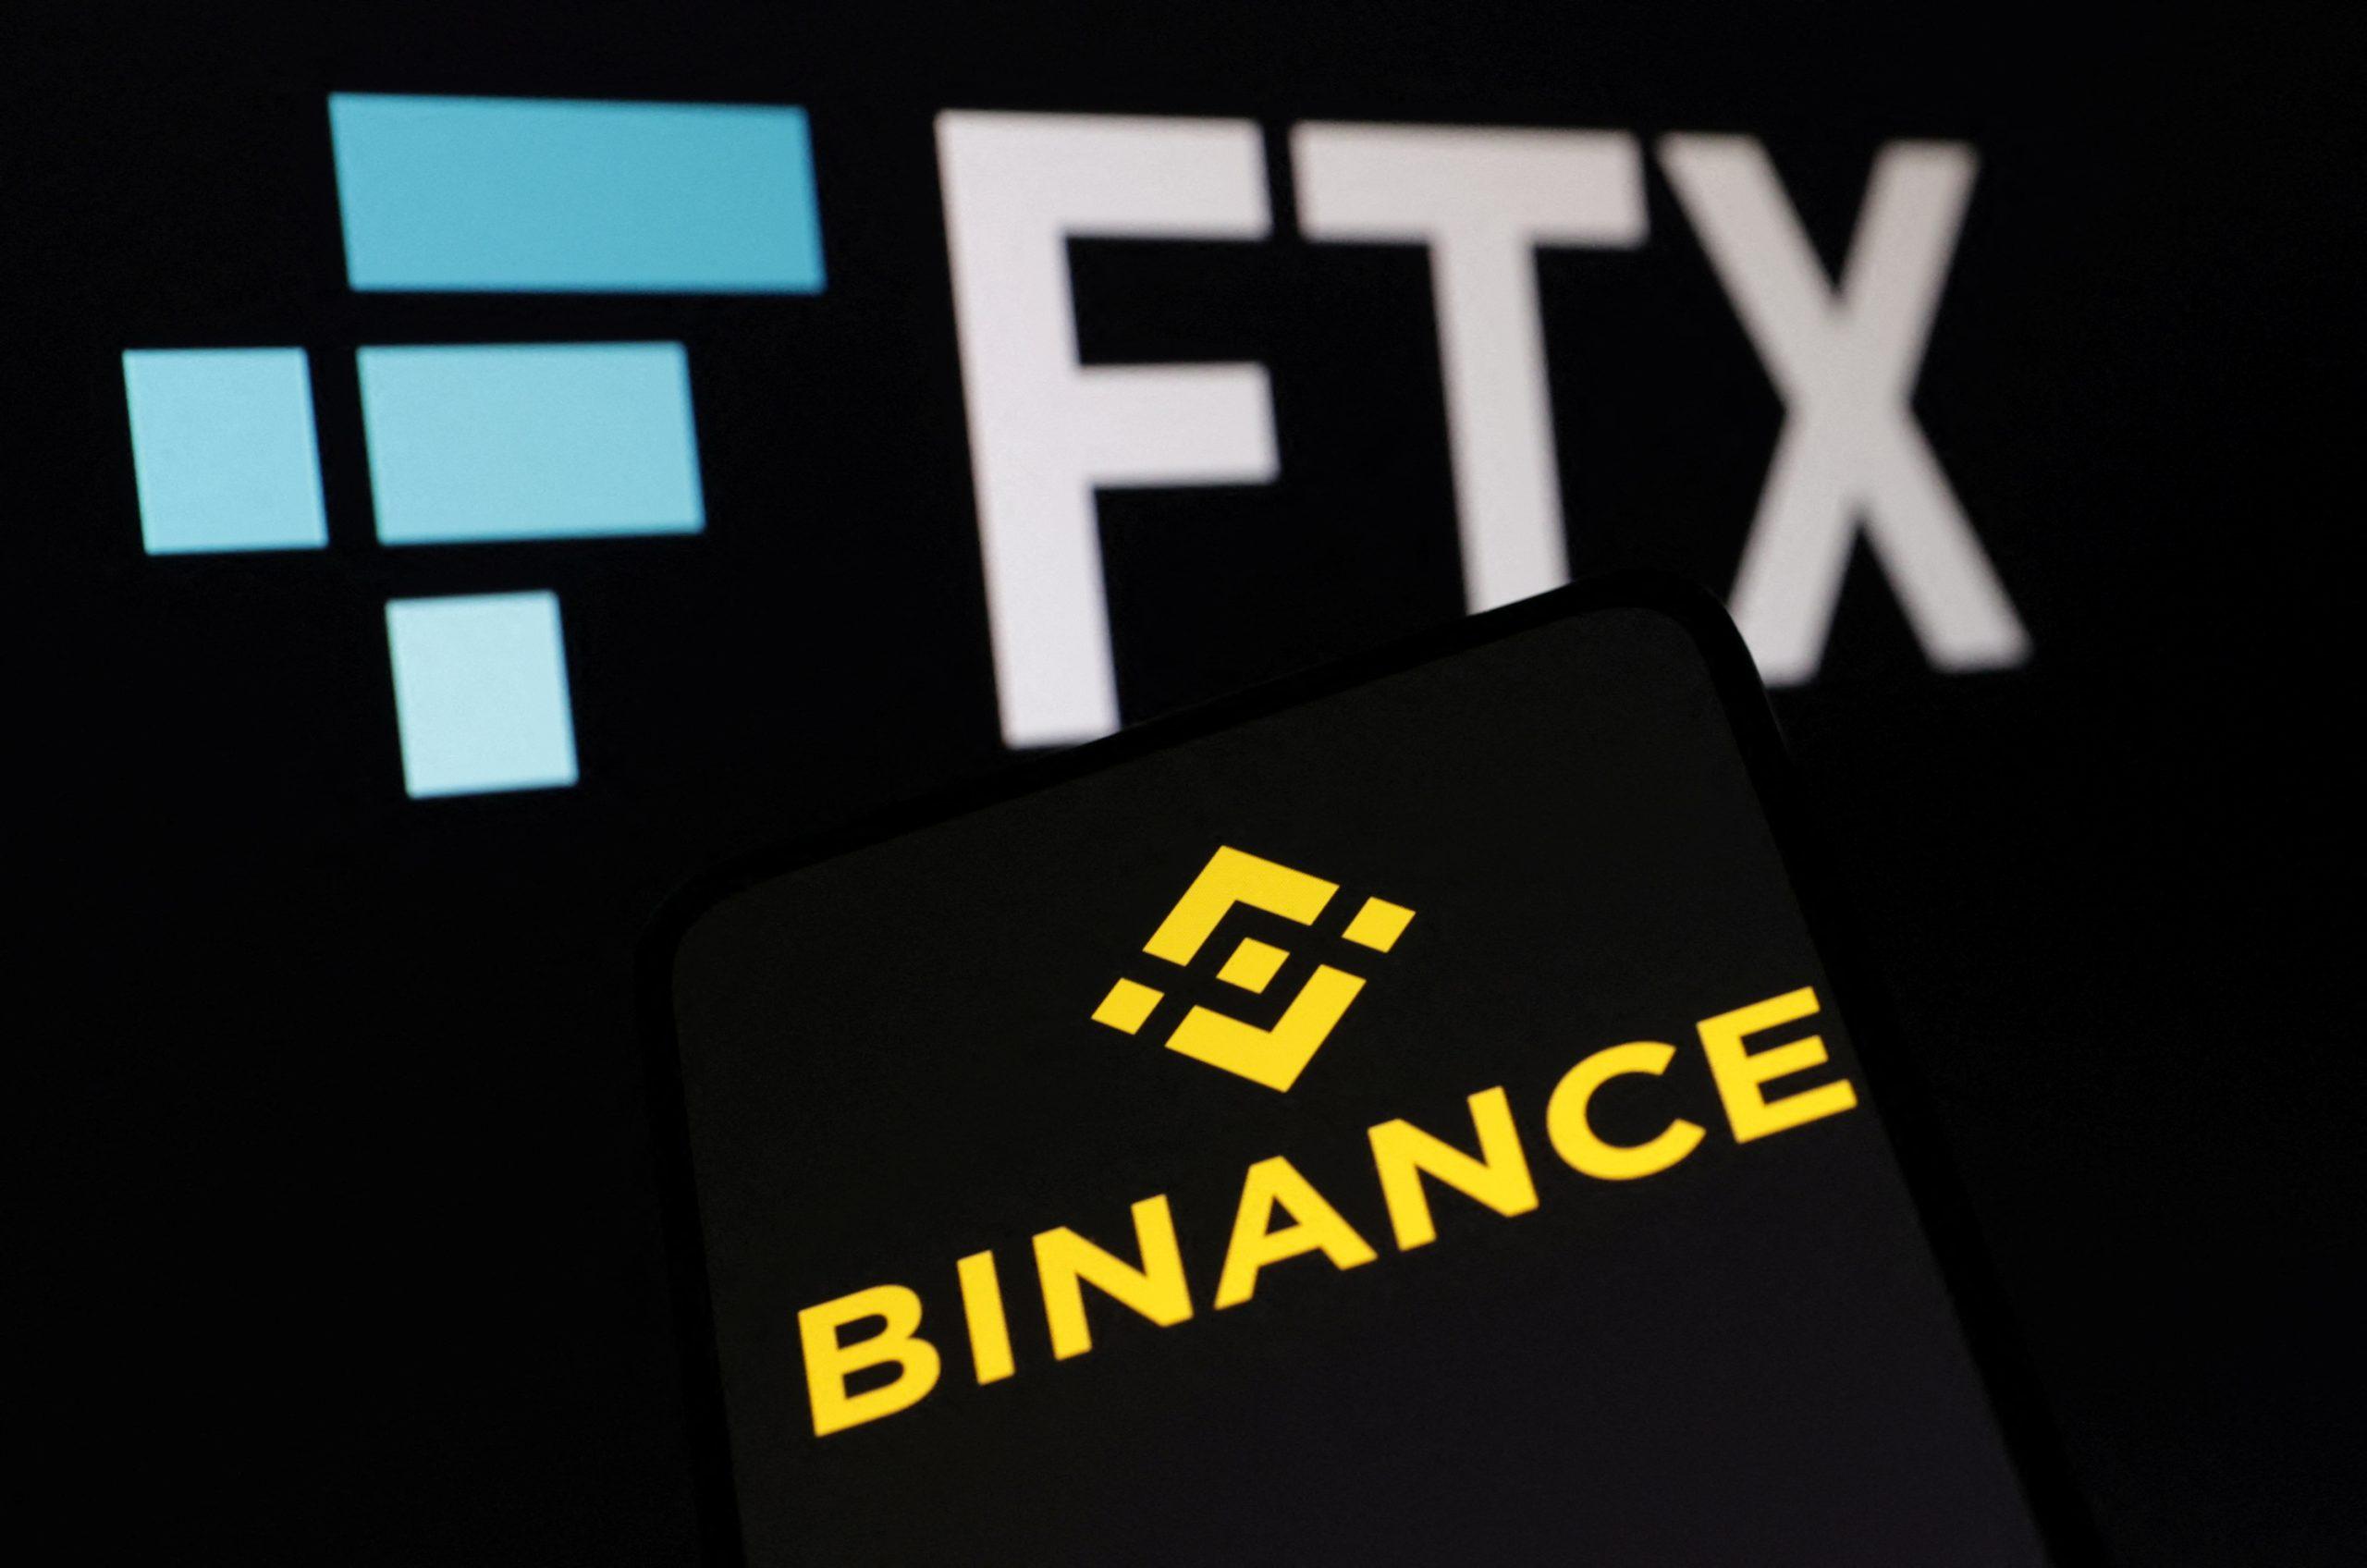  Crypto rinka gali pamatyti didžiausią griuvimą istorijoje, jei Binance atšauks FTX įsigijimą